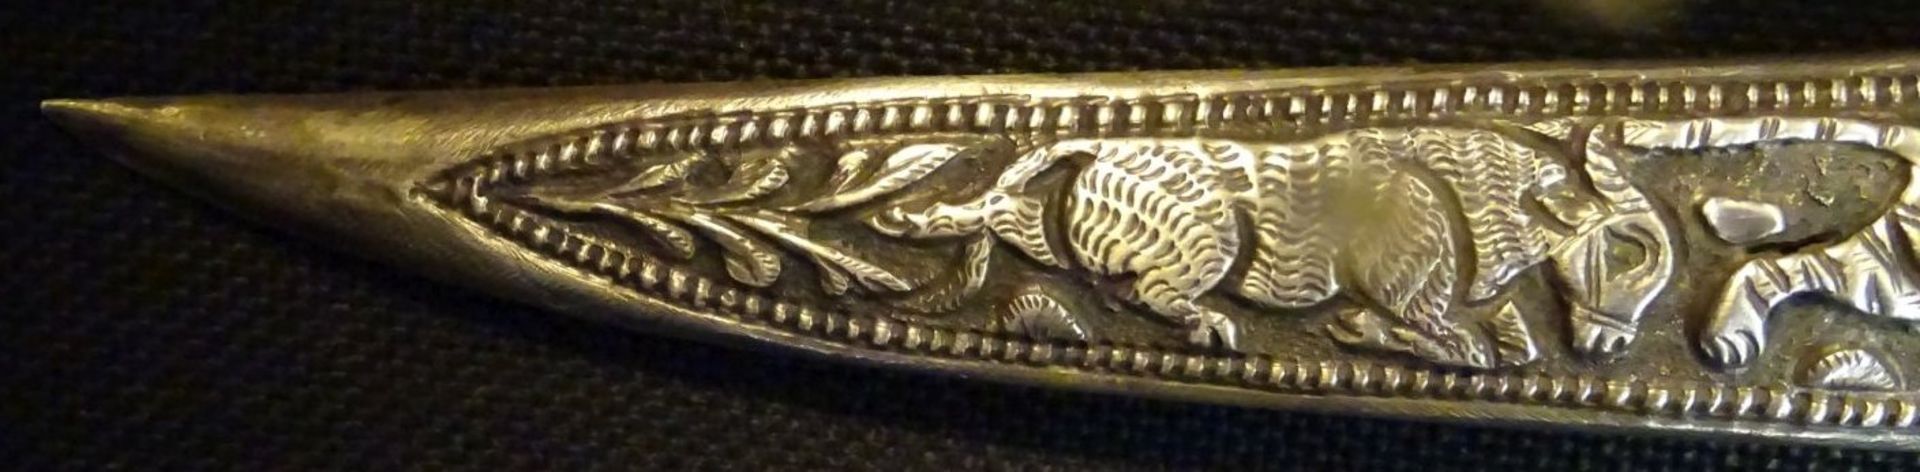 silberner orientalischer Schmuckdolch, gefüllter Silbergriff mit Widderkopf, Scheide mit Tier-Relie - Bild 9 aus 9